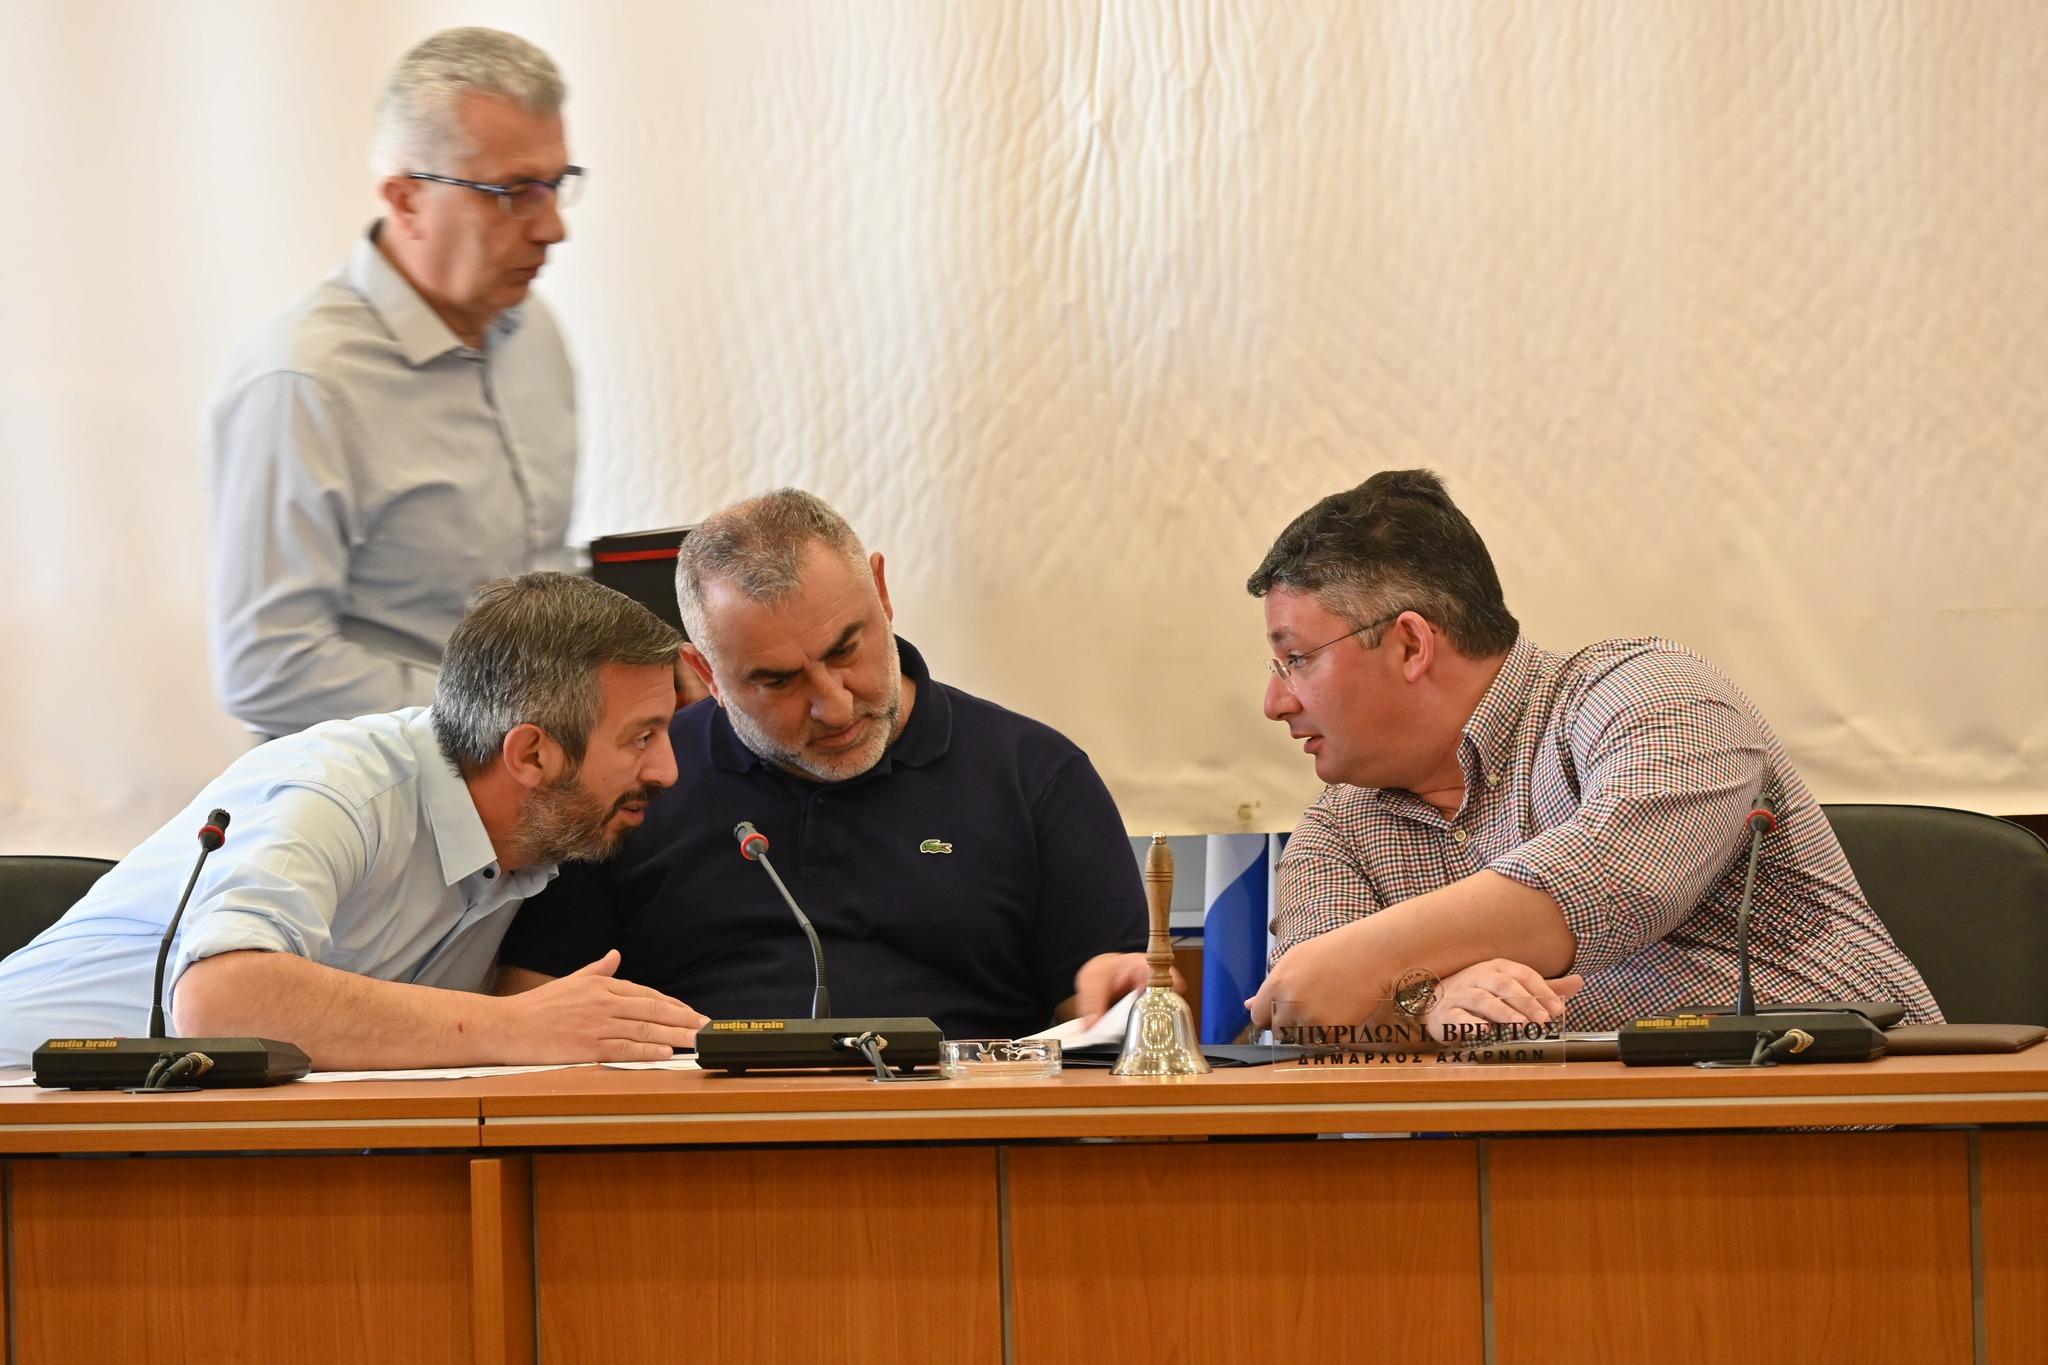 Συνεδρίασε το Συντονιστικό Τοπικό Όργανο Πολιτικής Προστασίας του Δήμου Αχαρνών